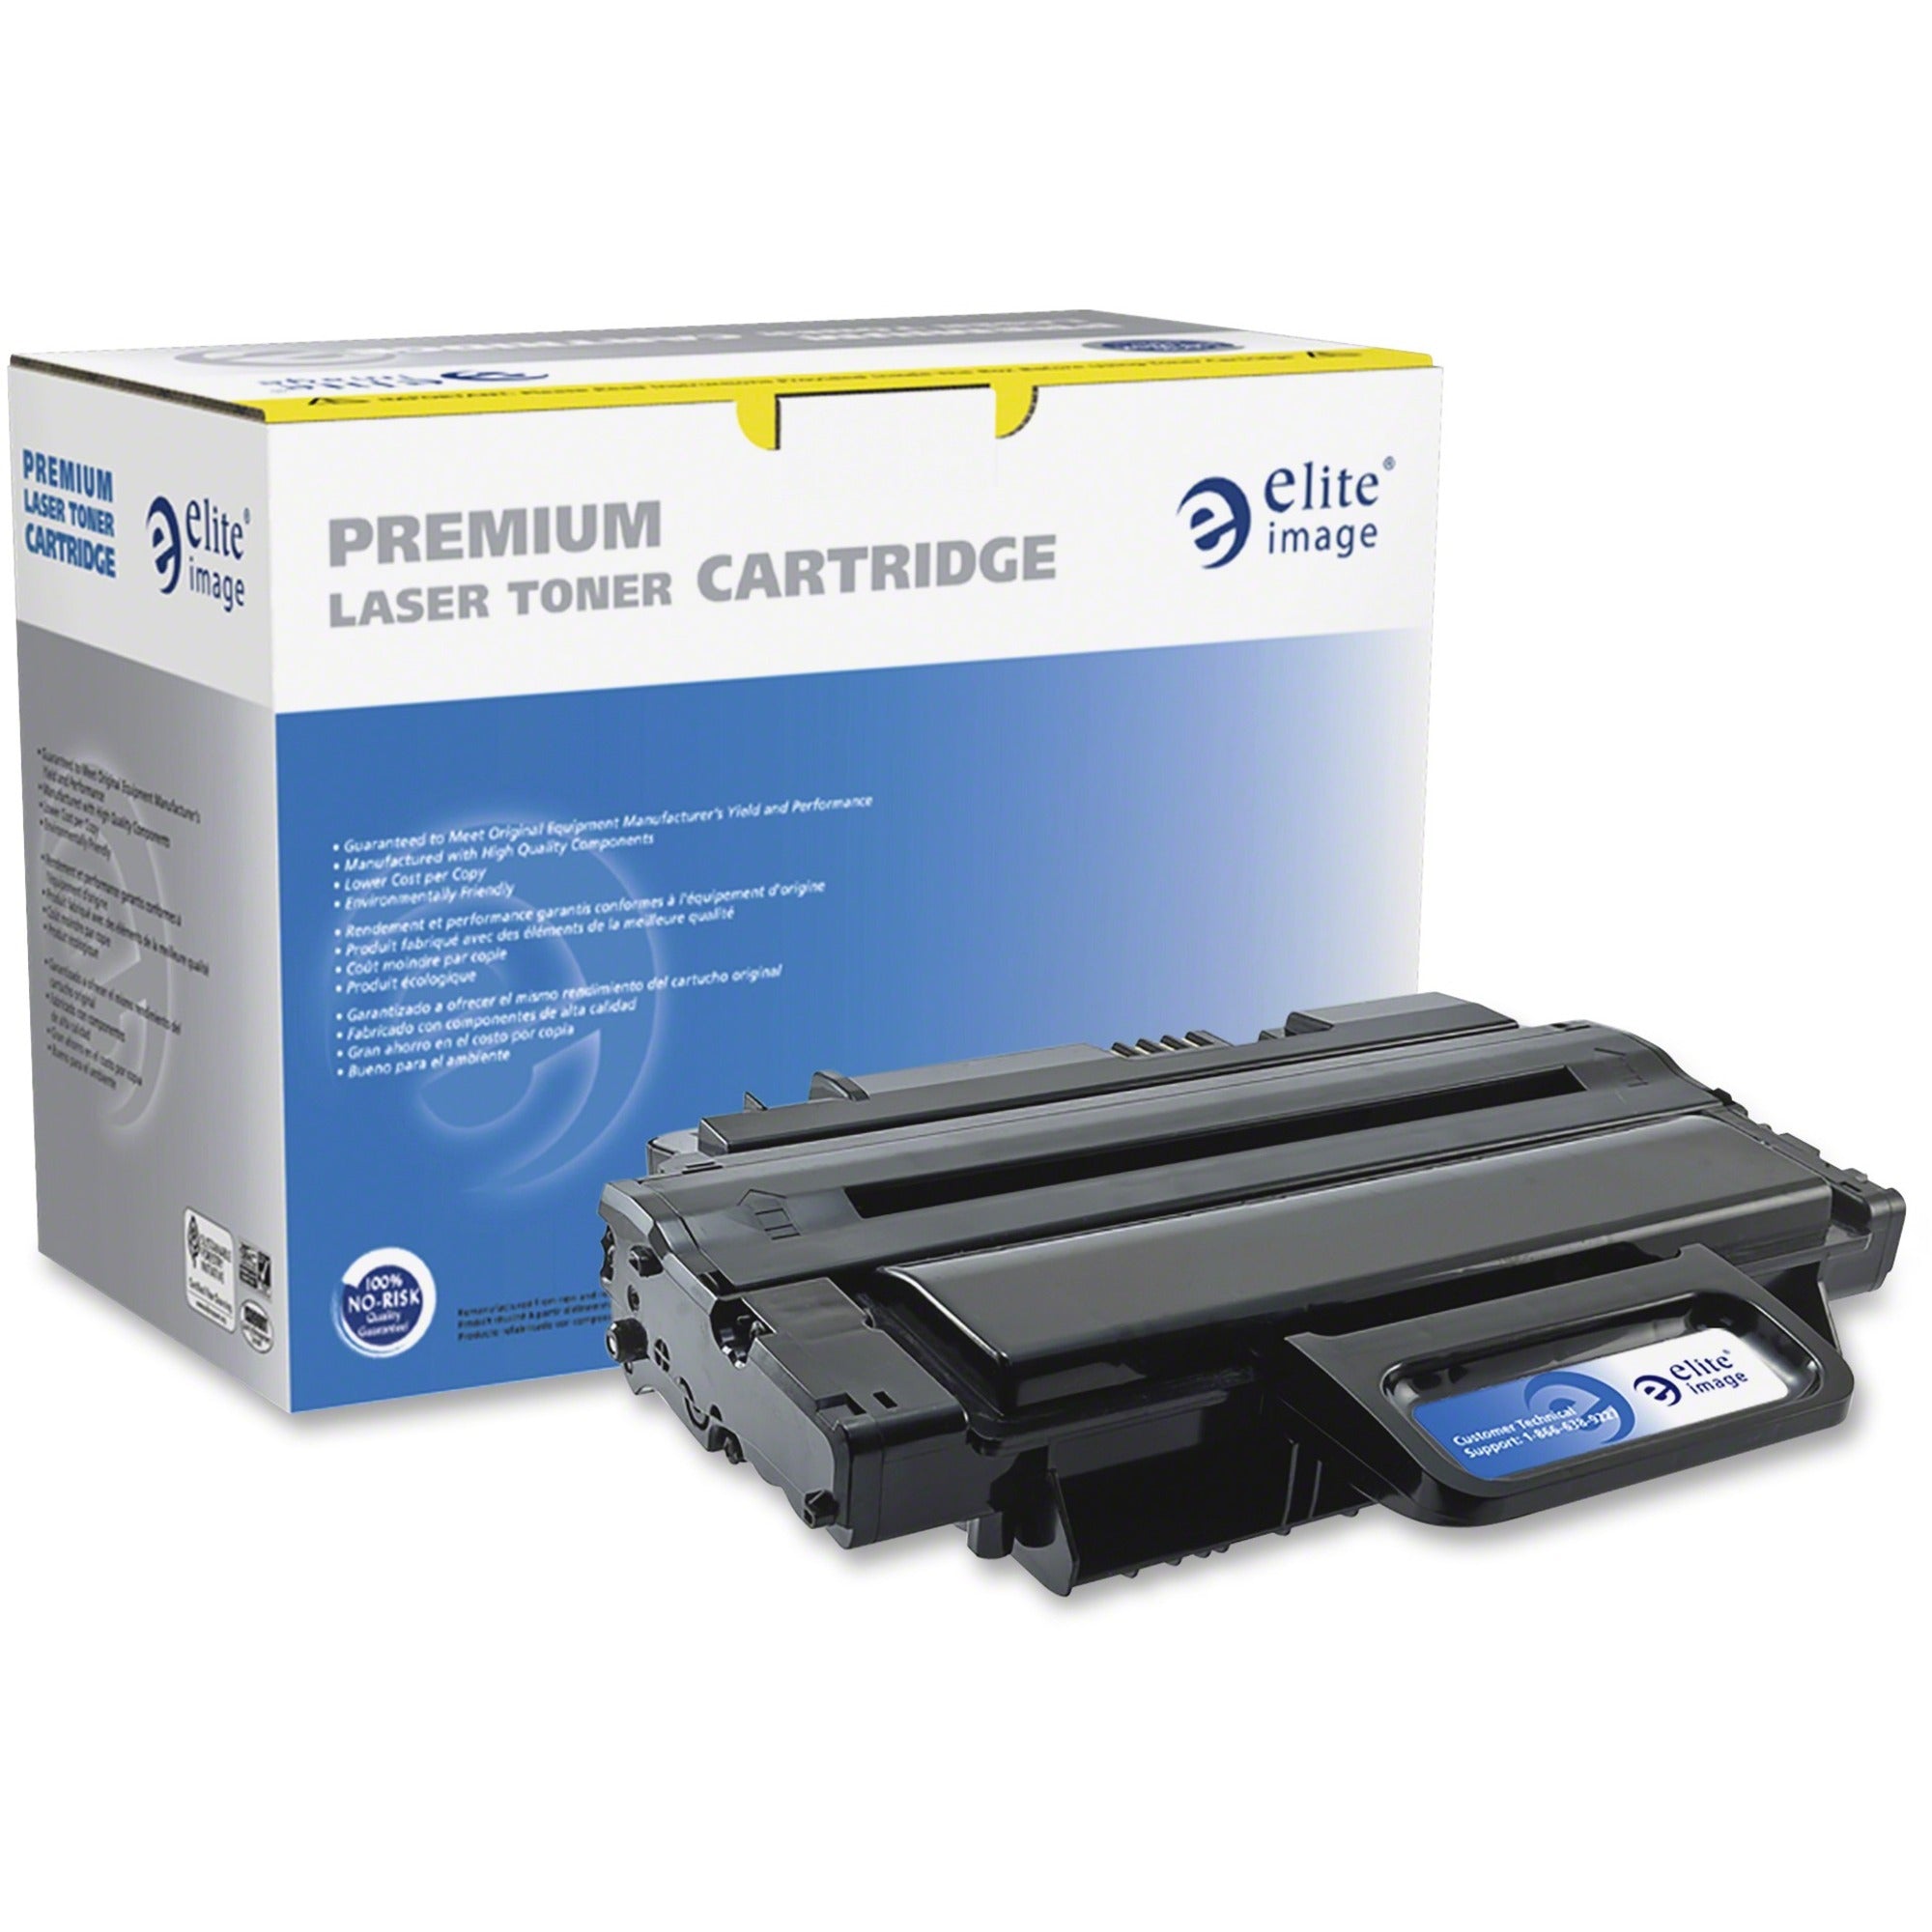 Elite Image Remanufactured High Yield Laser Toner Cartridge - Alternative for Samsung MLT-D209L - Black - 1 Each - 5000 Pages - 1